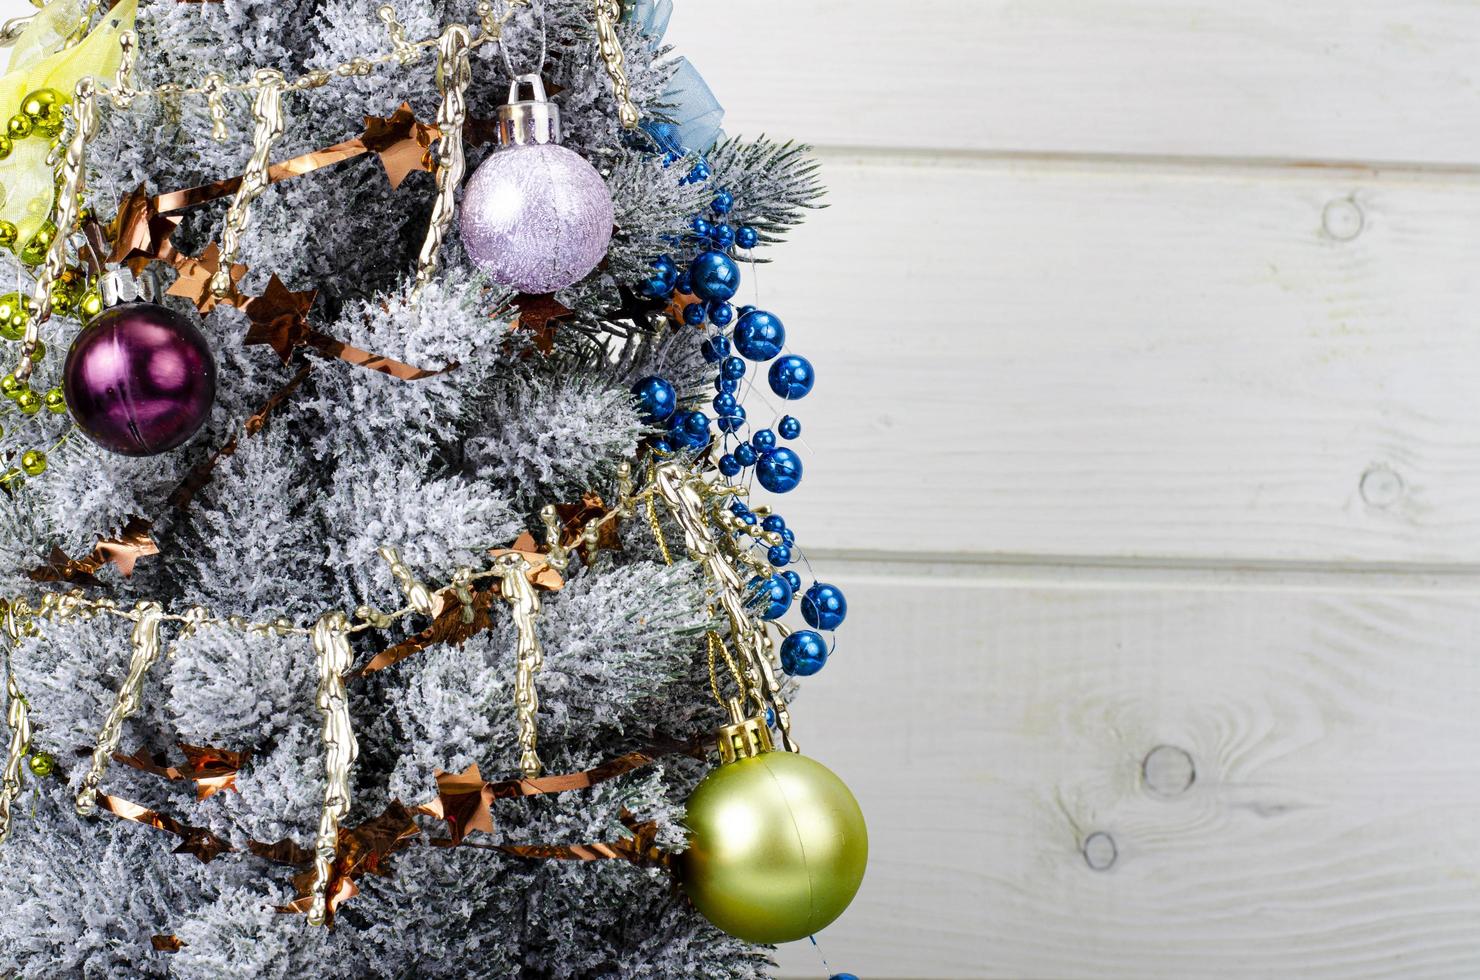 celebramos navidad y año nuevo. pequeño árbol de navidad decorativo decorado con bolas y juguetes. foto de estudio.